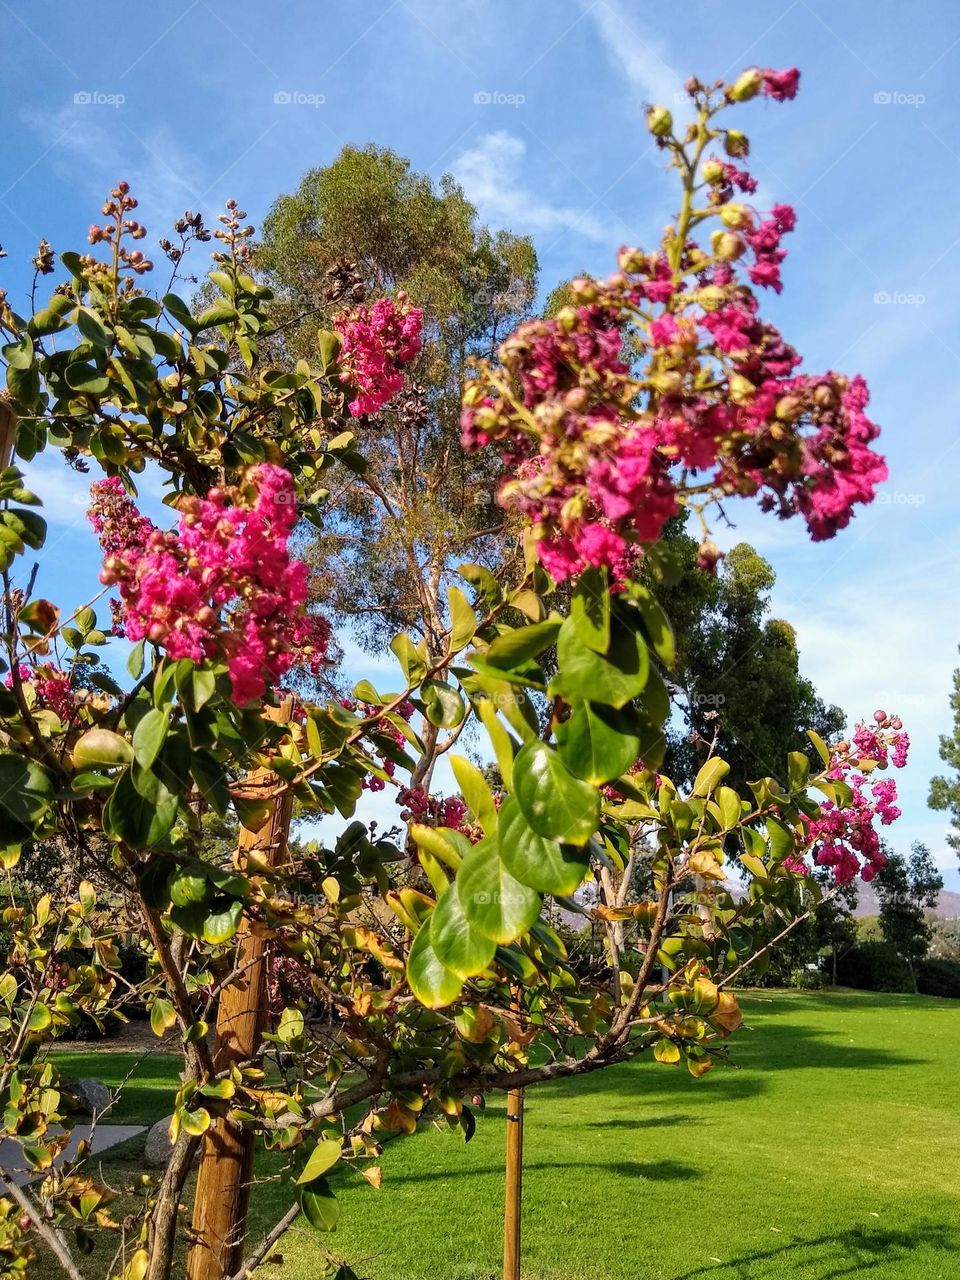 Crepe myrtle in bloom at a local neighborhood park in El Cajon, CA.